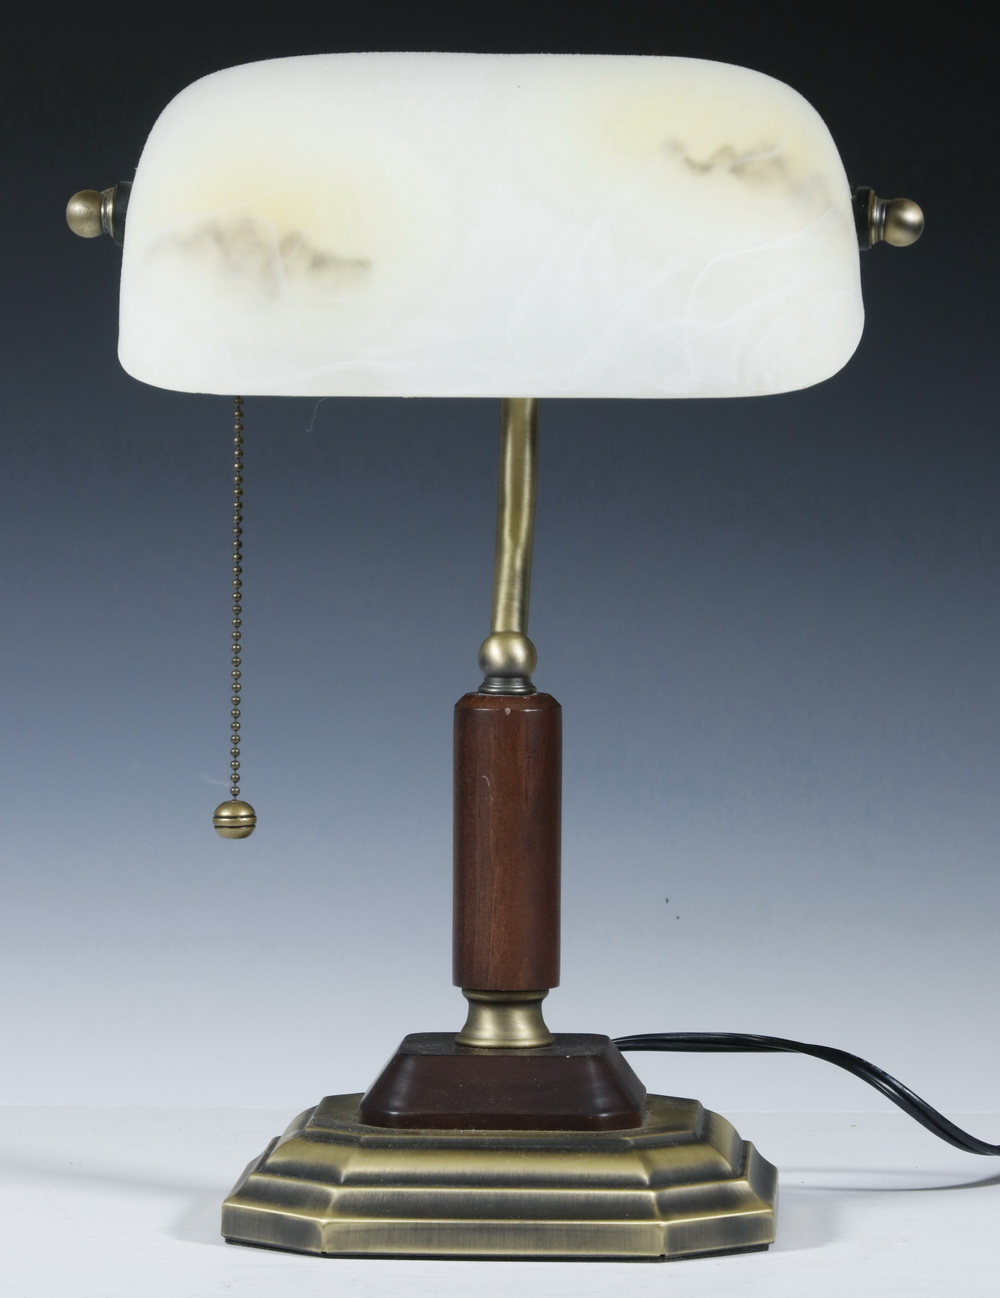 DESK LAMP BY OTTO LITE Contemporary 2b51e7